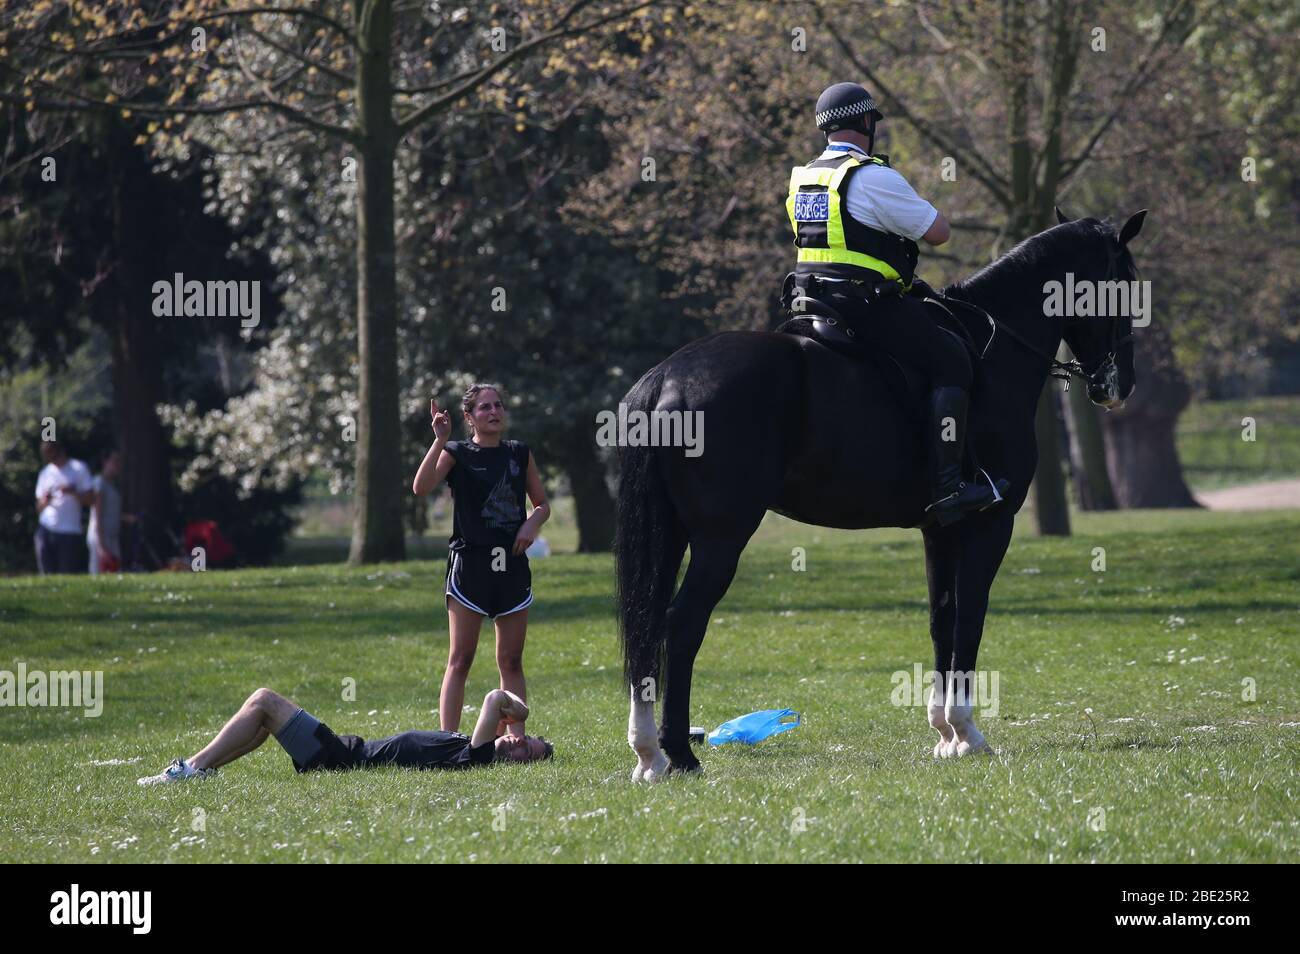 Un oficial de policía montado ofrece asesoramiento a las personas que utilizan el Parque Victoria, en el este de Londres, después de que se reabriera con horarios reducidos y nuevas medidas de control en vigor durante el brote de coronavirus. Foto de stock